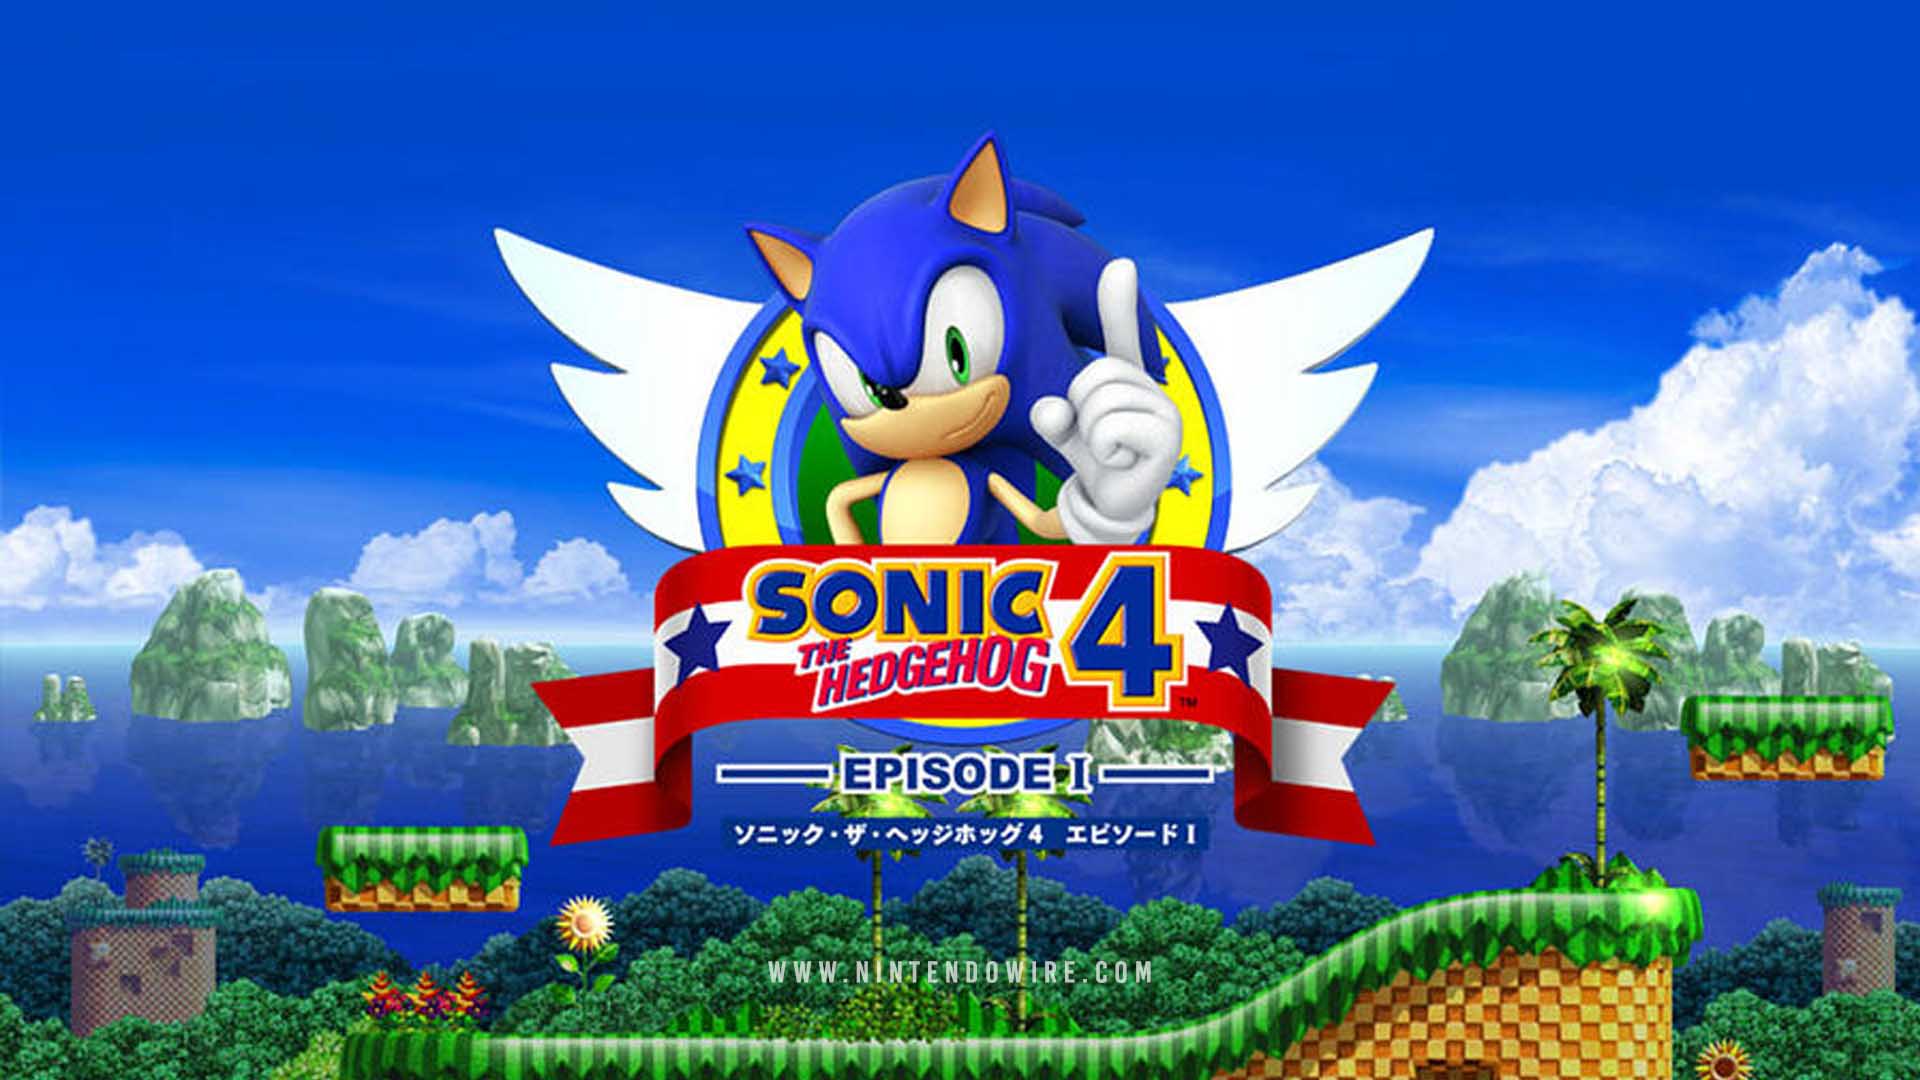 Zones sonic the hedgehog. Соник хеджхог 1. Игра Sonic the Hedgehog 4. Sonic 4 Episode 1. Sonic the Hedgehog 4 Episode i.